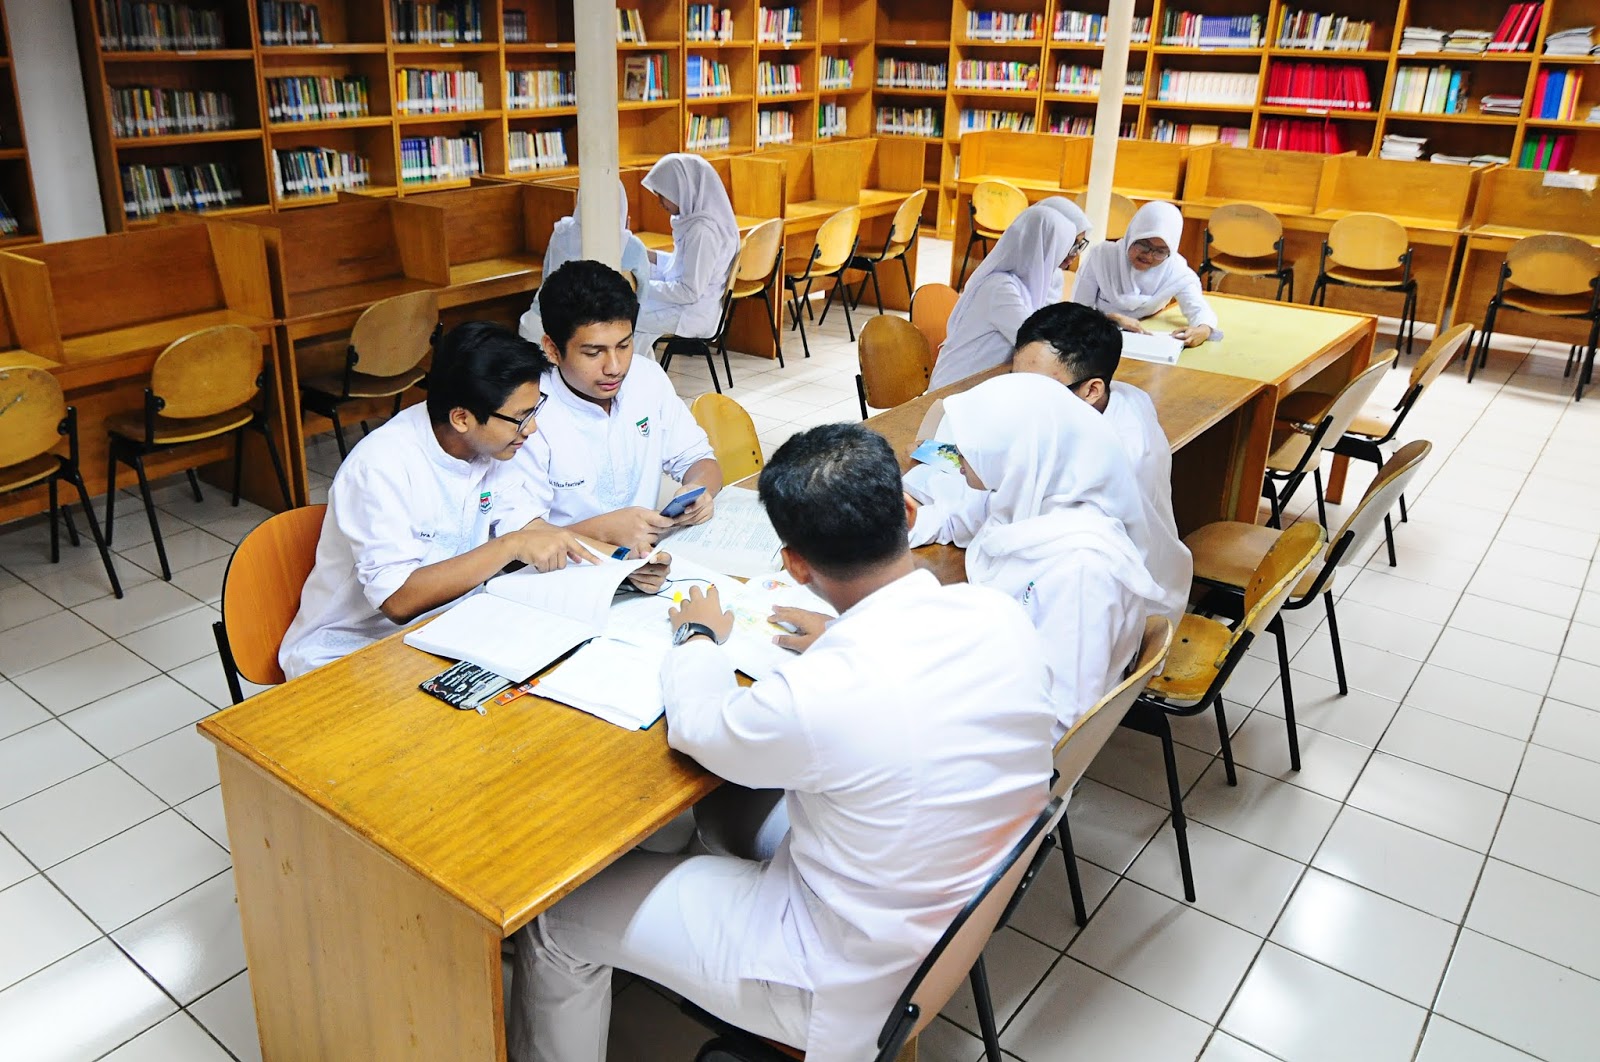 boarding school di Bogor